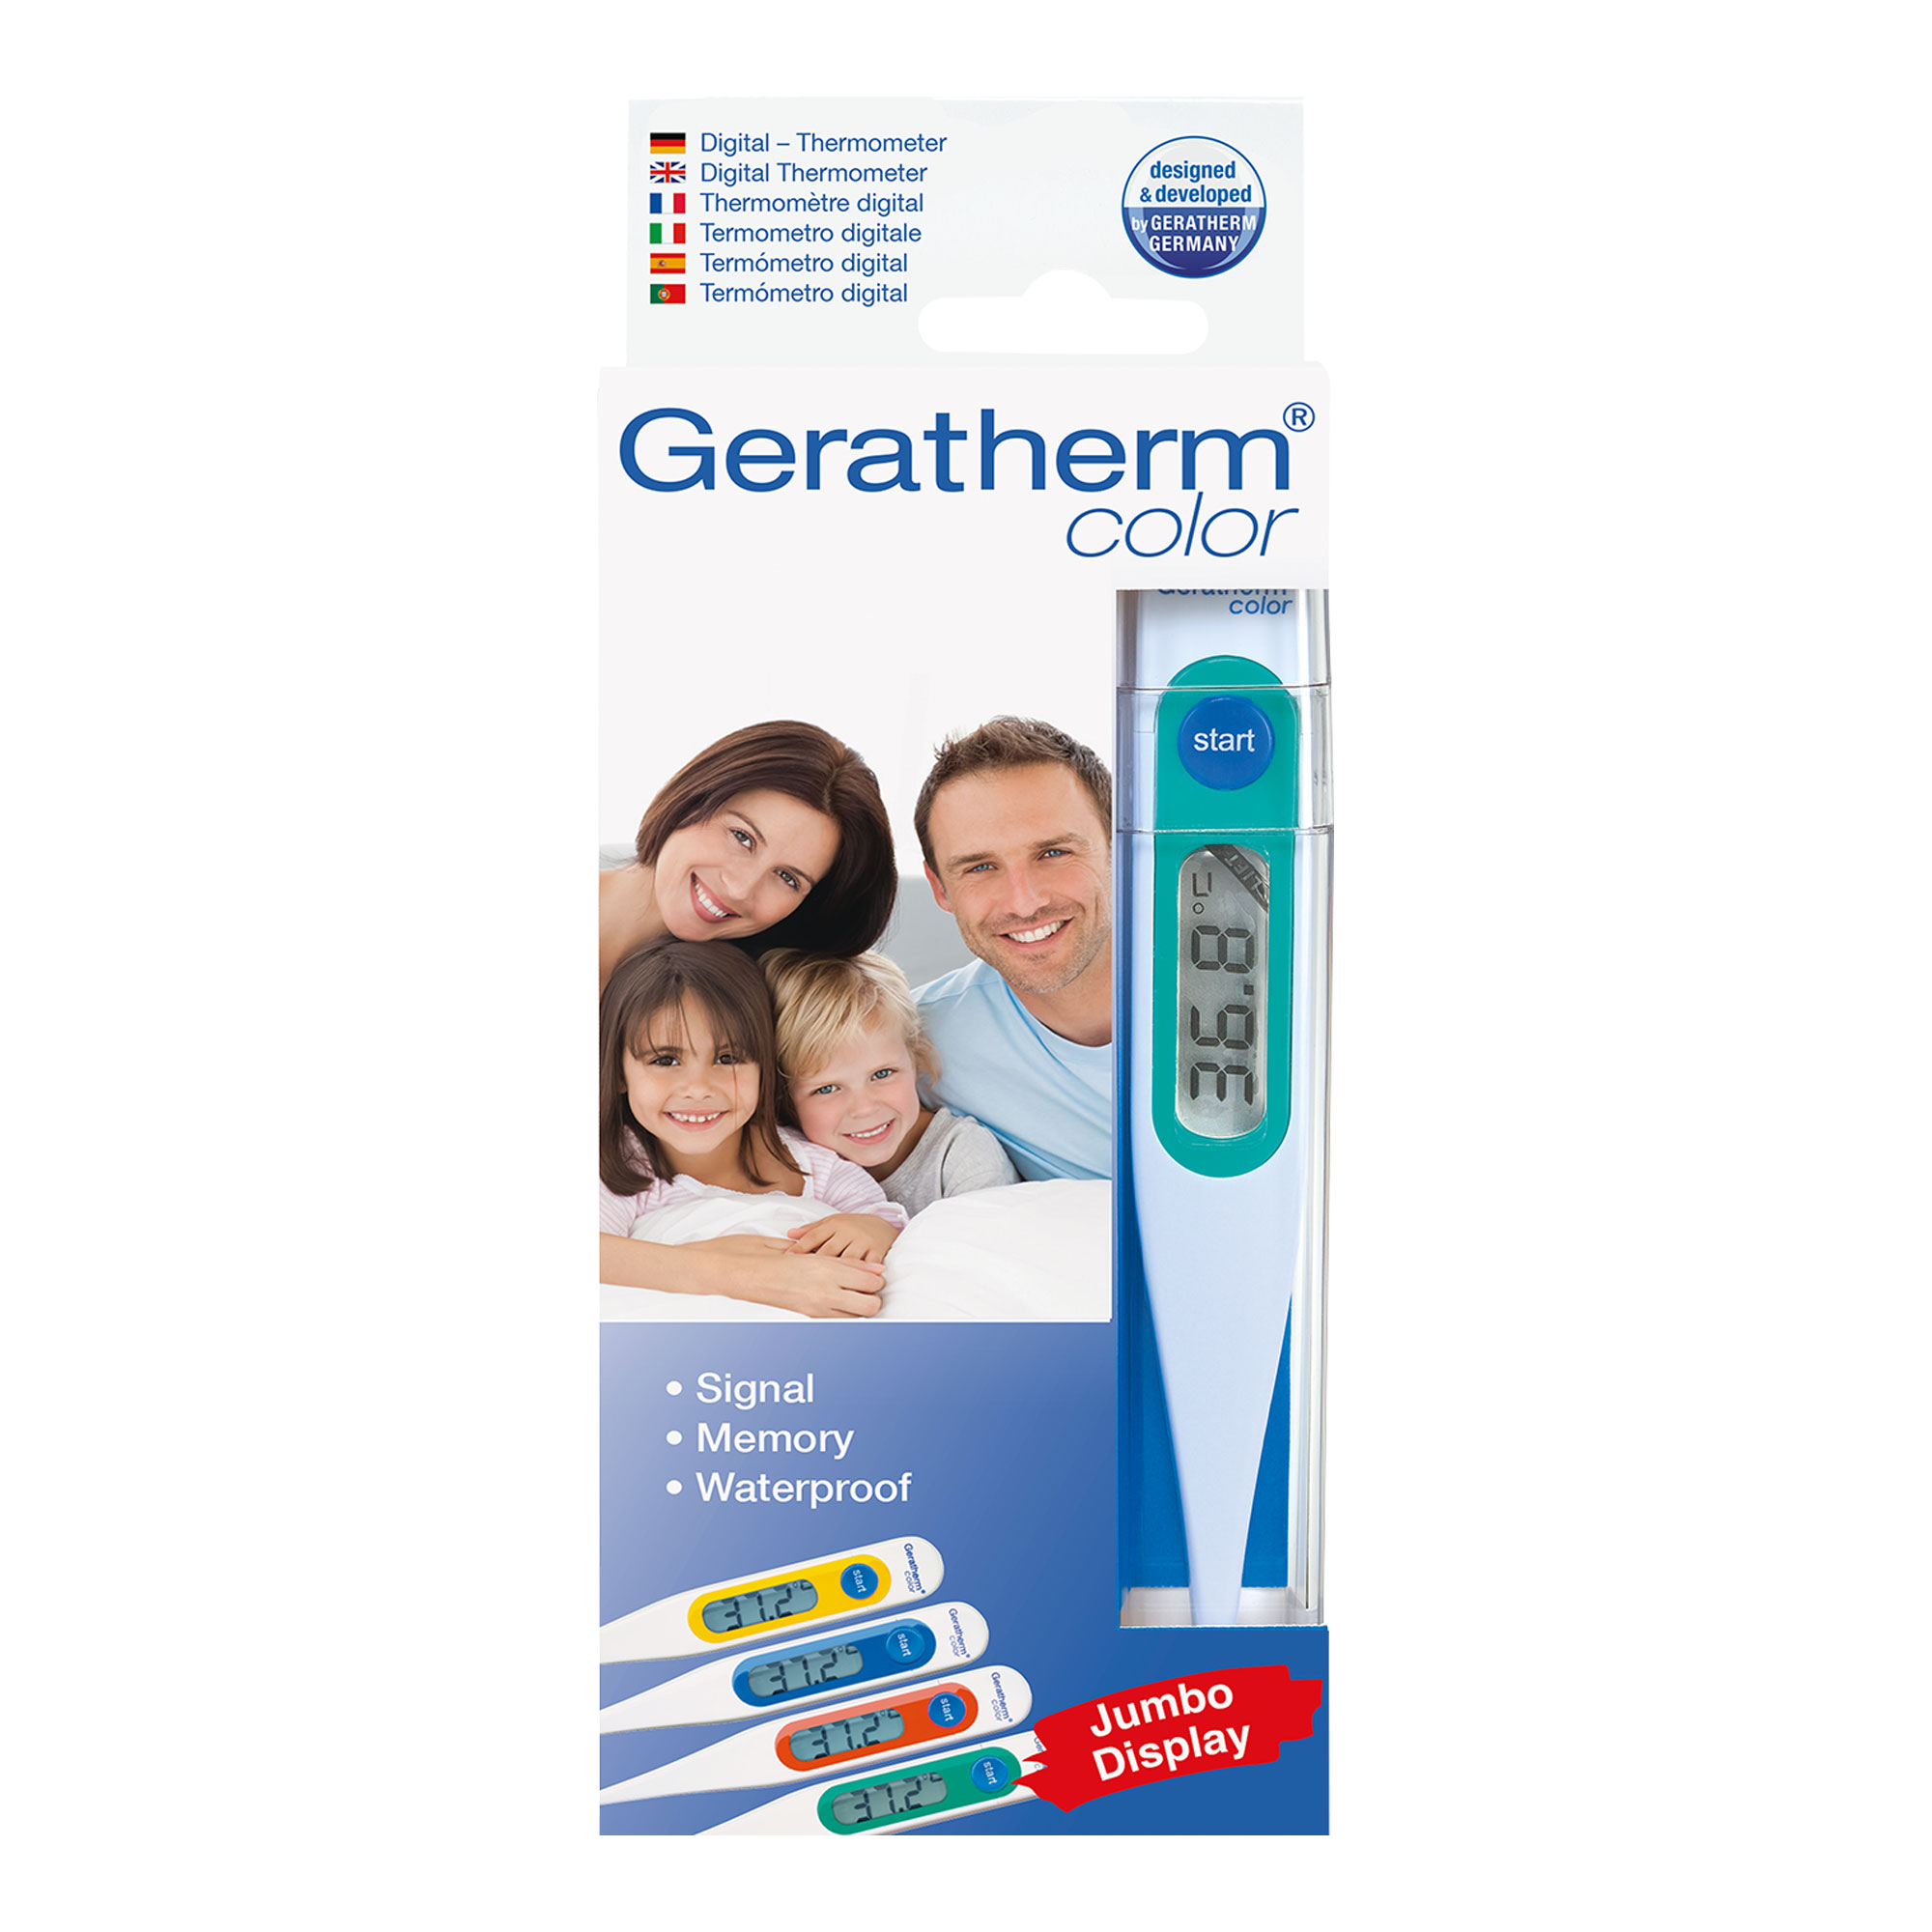 Digitalthermometer für die ganze Familie.